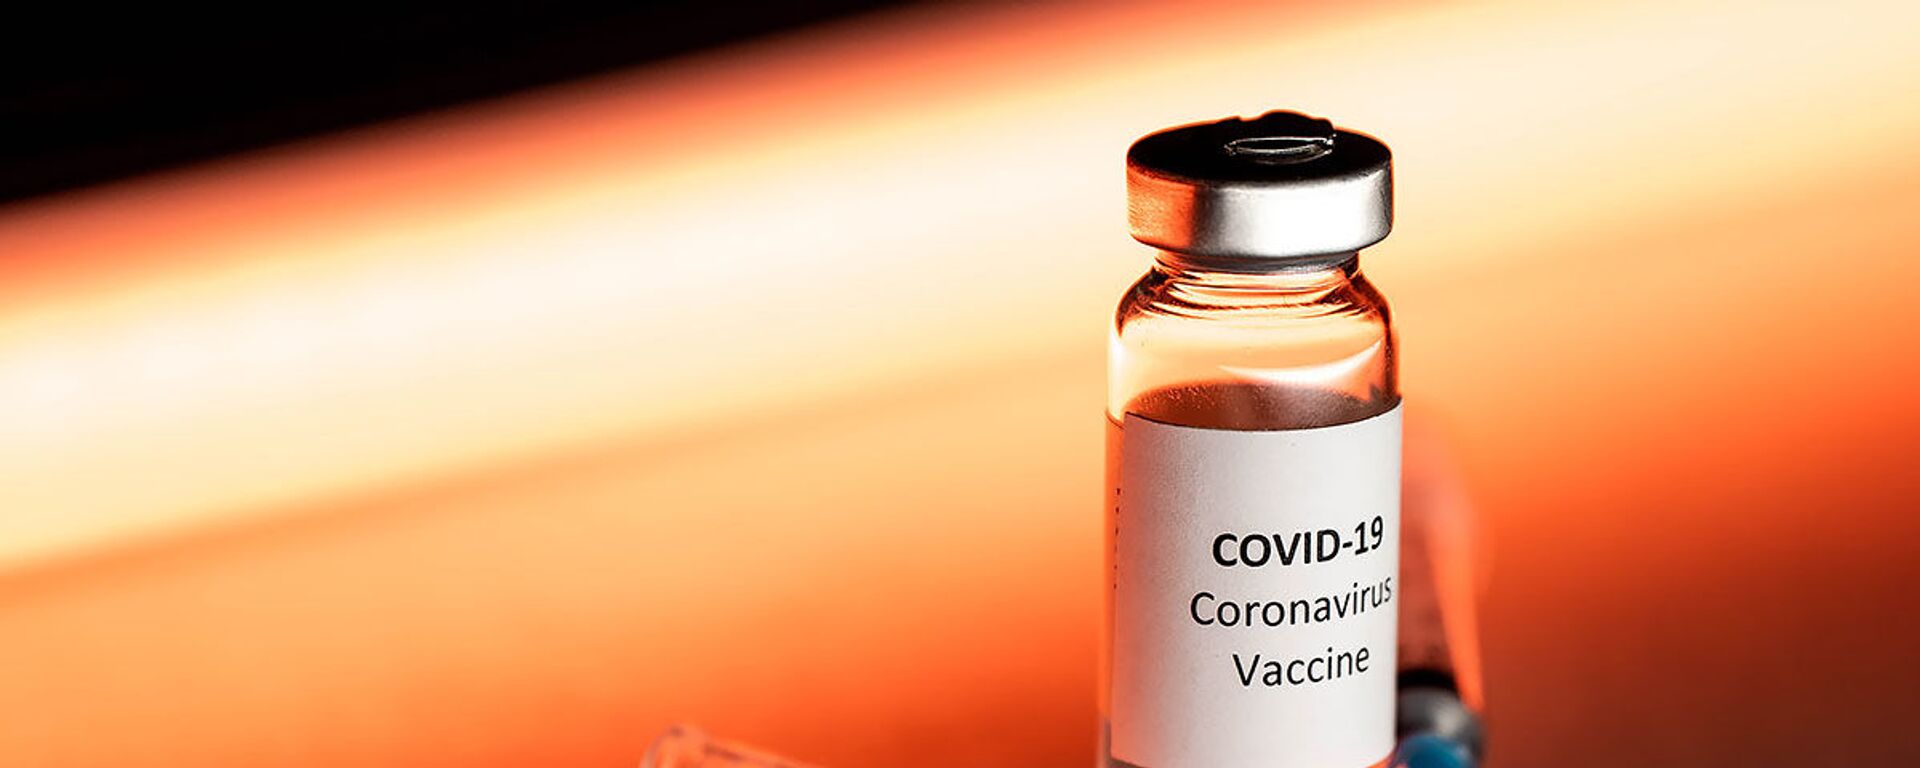 Вакцина от коронавируса, архивное фото  - Sputnik Таджикистан, 1920, 25.05.2021